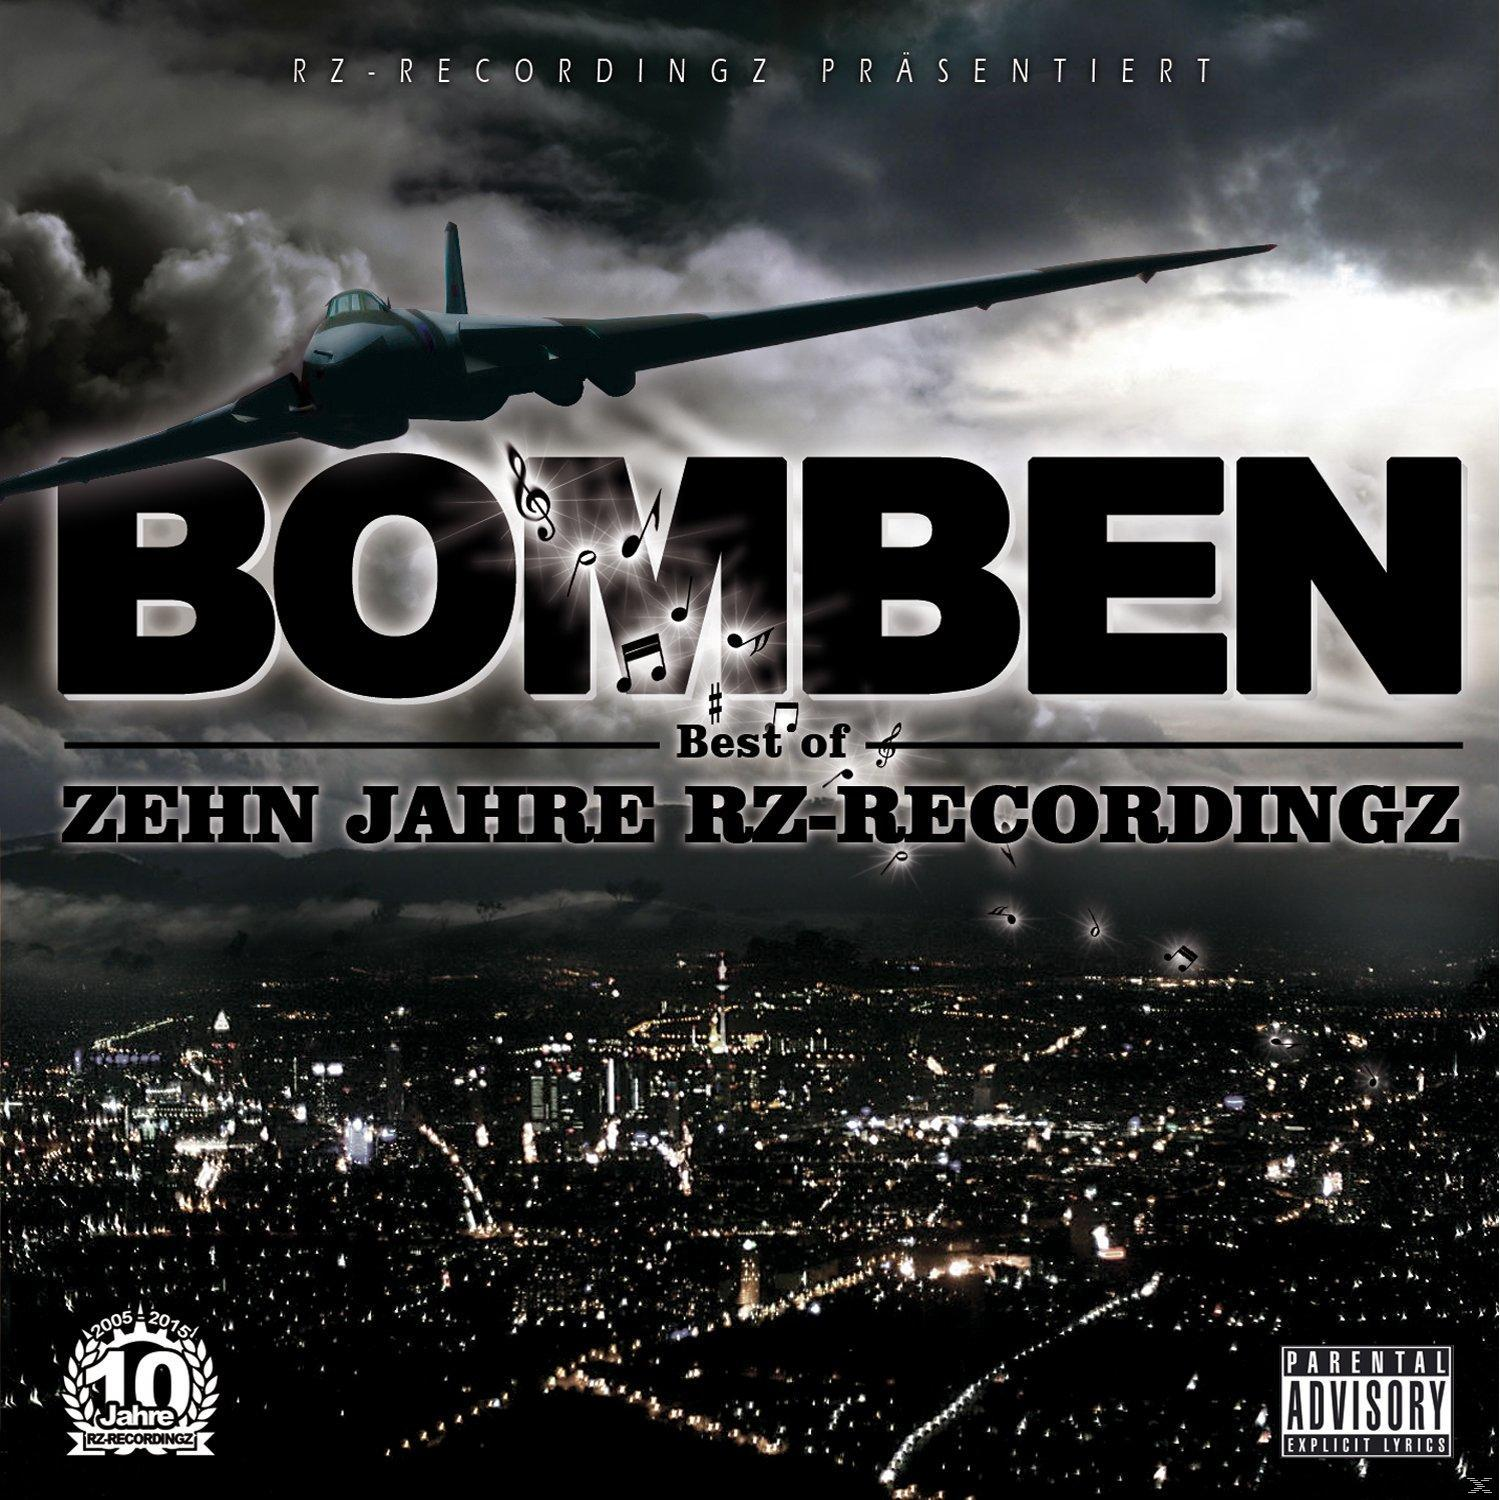 Rz-recordingz - Bomben - (CD)